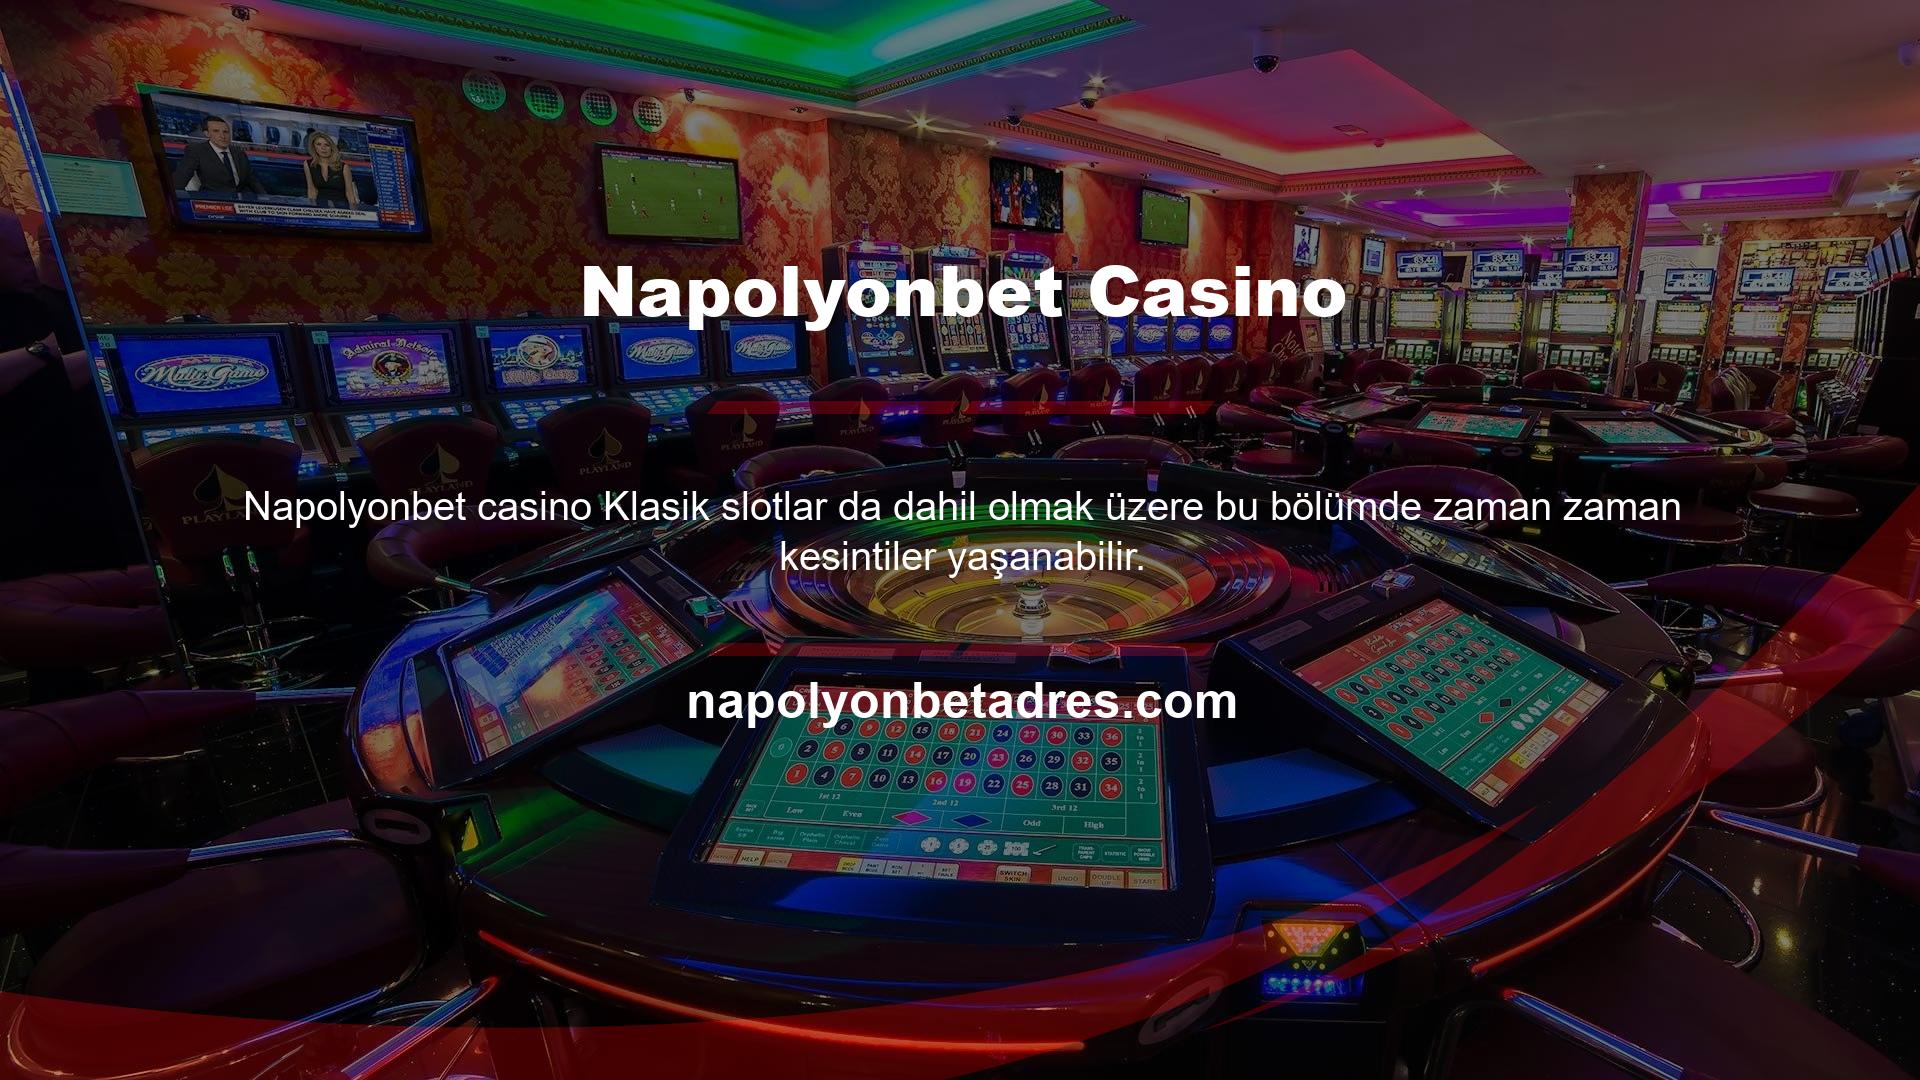 Napolyonbet giriş ekranında casino oyunlarından bingo, okey, tavla gibi oyunların keyfini çıkarabilirsiniz